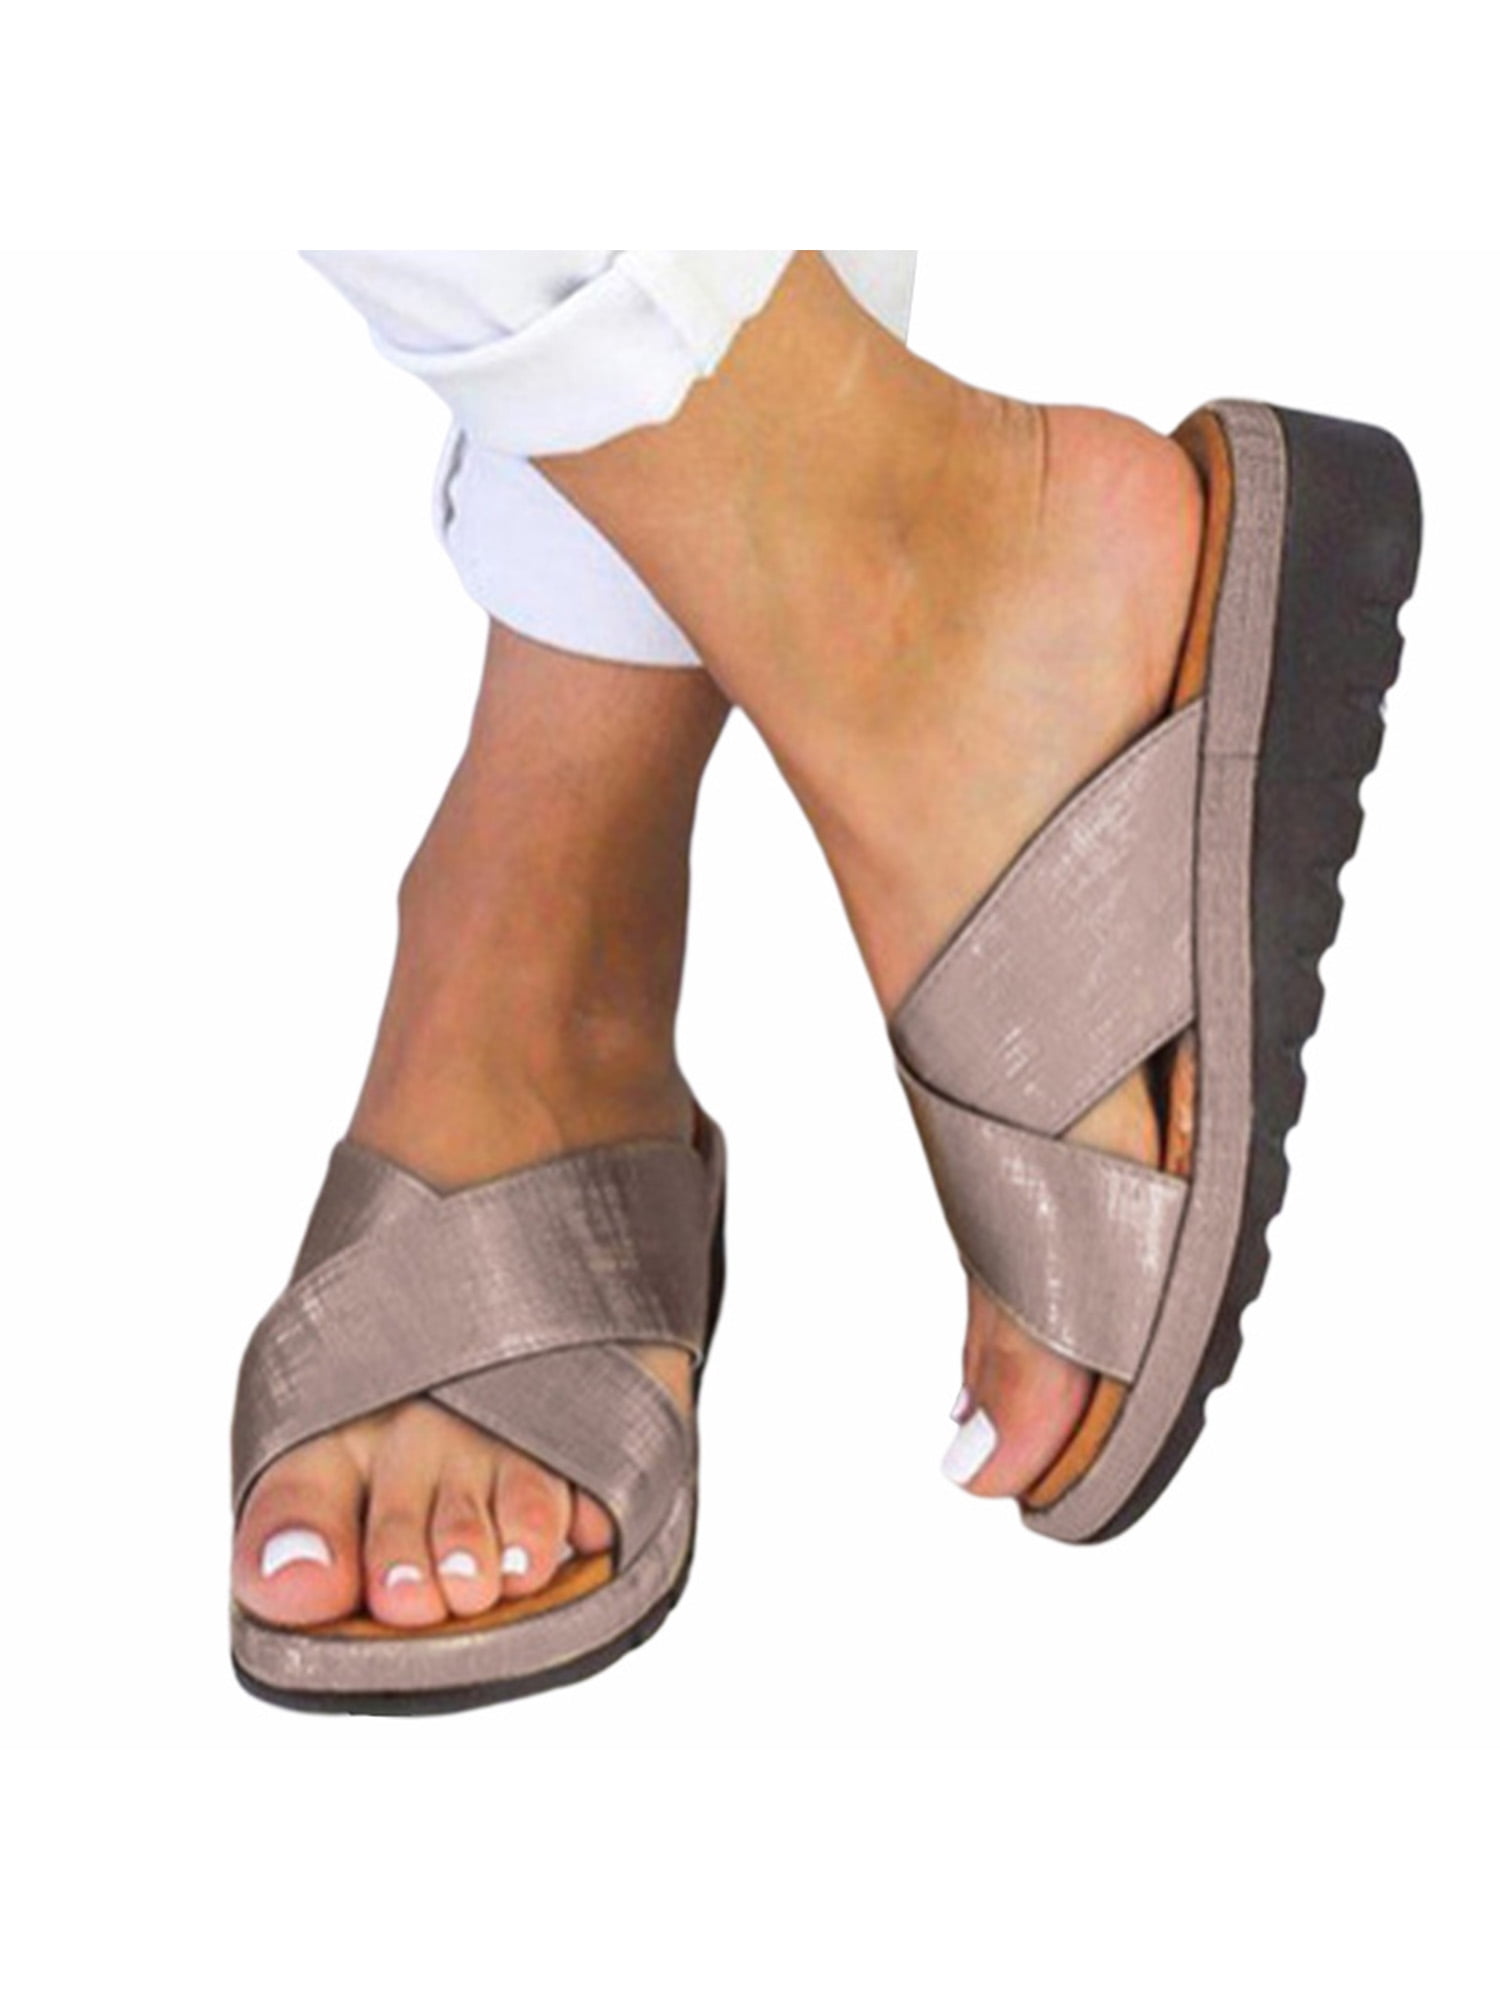 Teekit Sandals for Women Women Slipper Sandles Premium Orthopedic Open Toe Sandals Vintage Anti-Slip Breathable Summer Summer Sandal for Ladies Girls